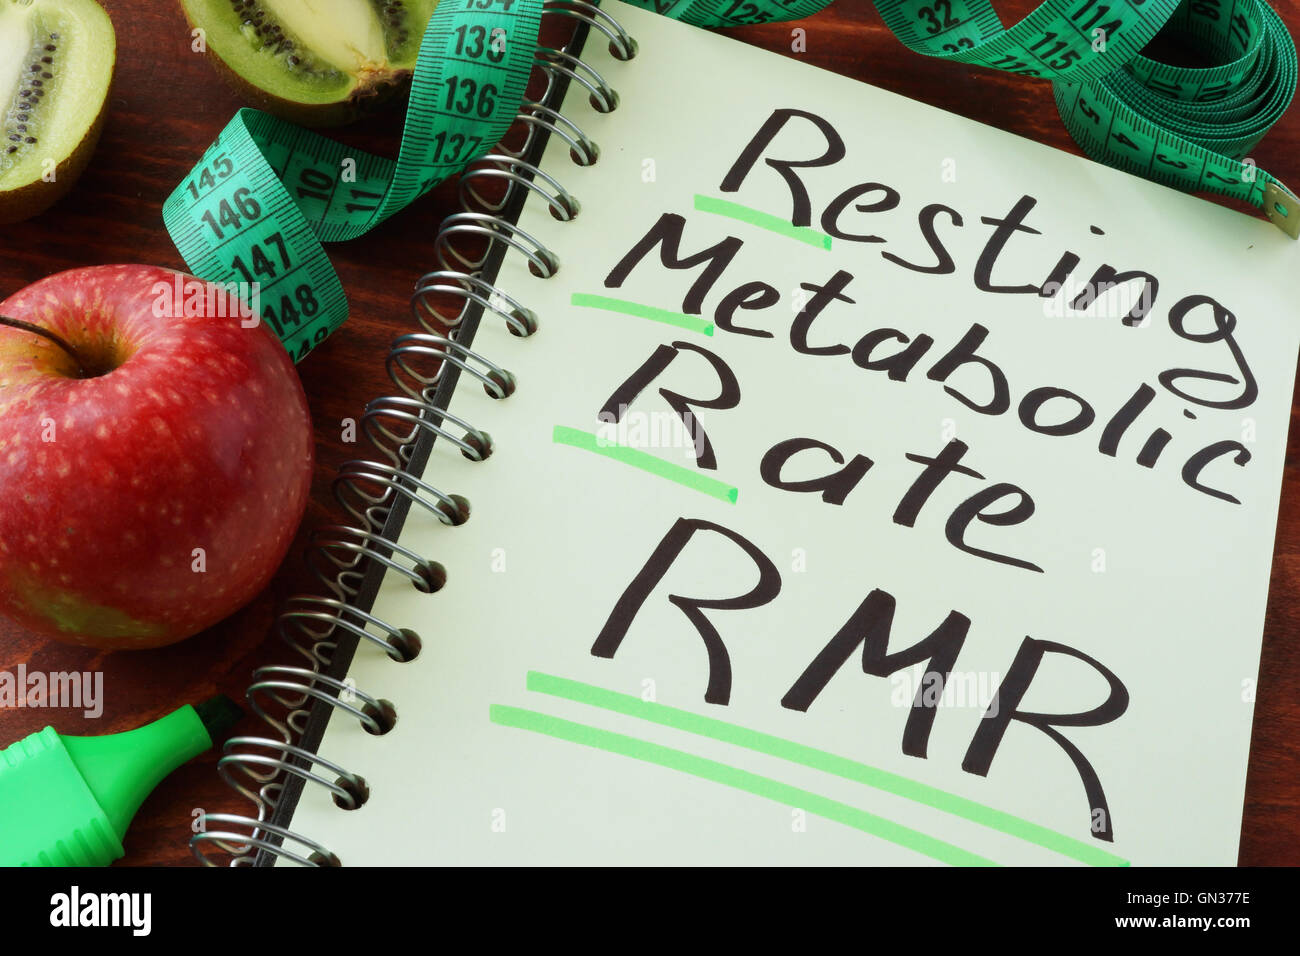 RMR la velocidad metabólica de descanso escrita en una hoja de bloc de notas. Foto de stock